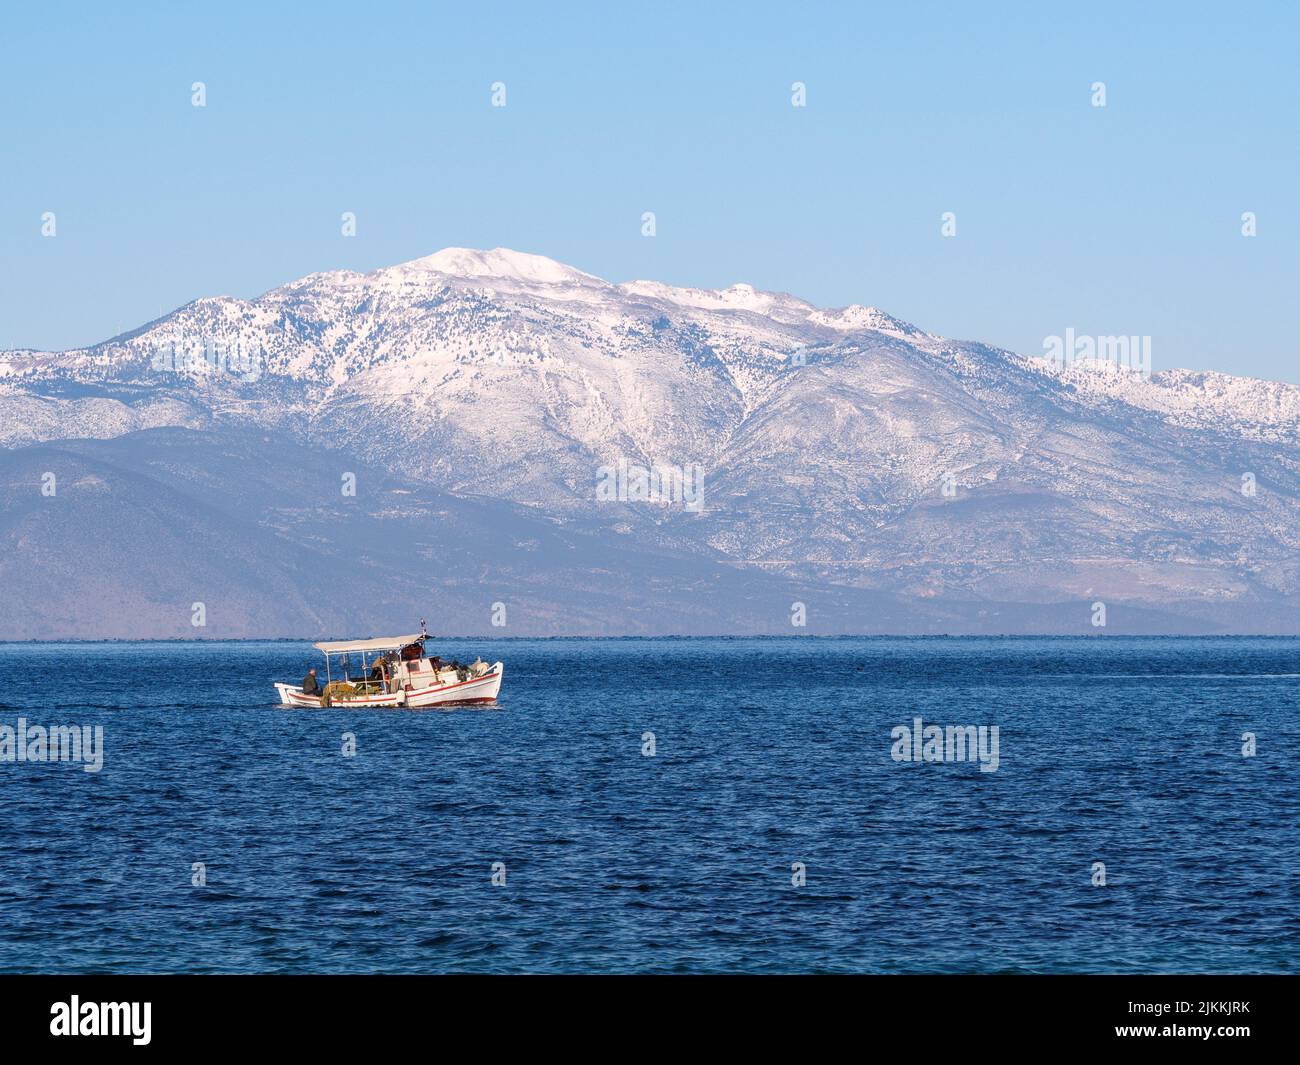 Una vista panoramica di una barca a vela in mare aperto contro una montagna innevata nel golfo di Corinthia a Kiato, Grecia Foto Stock